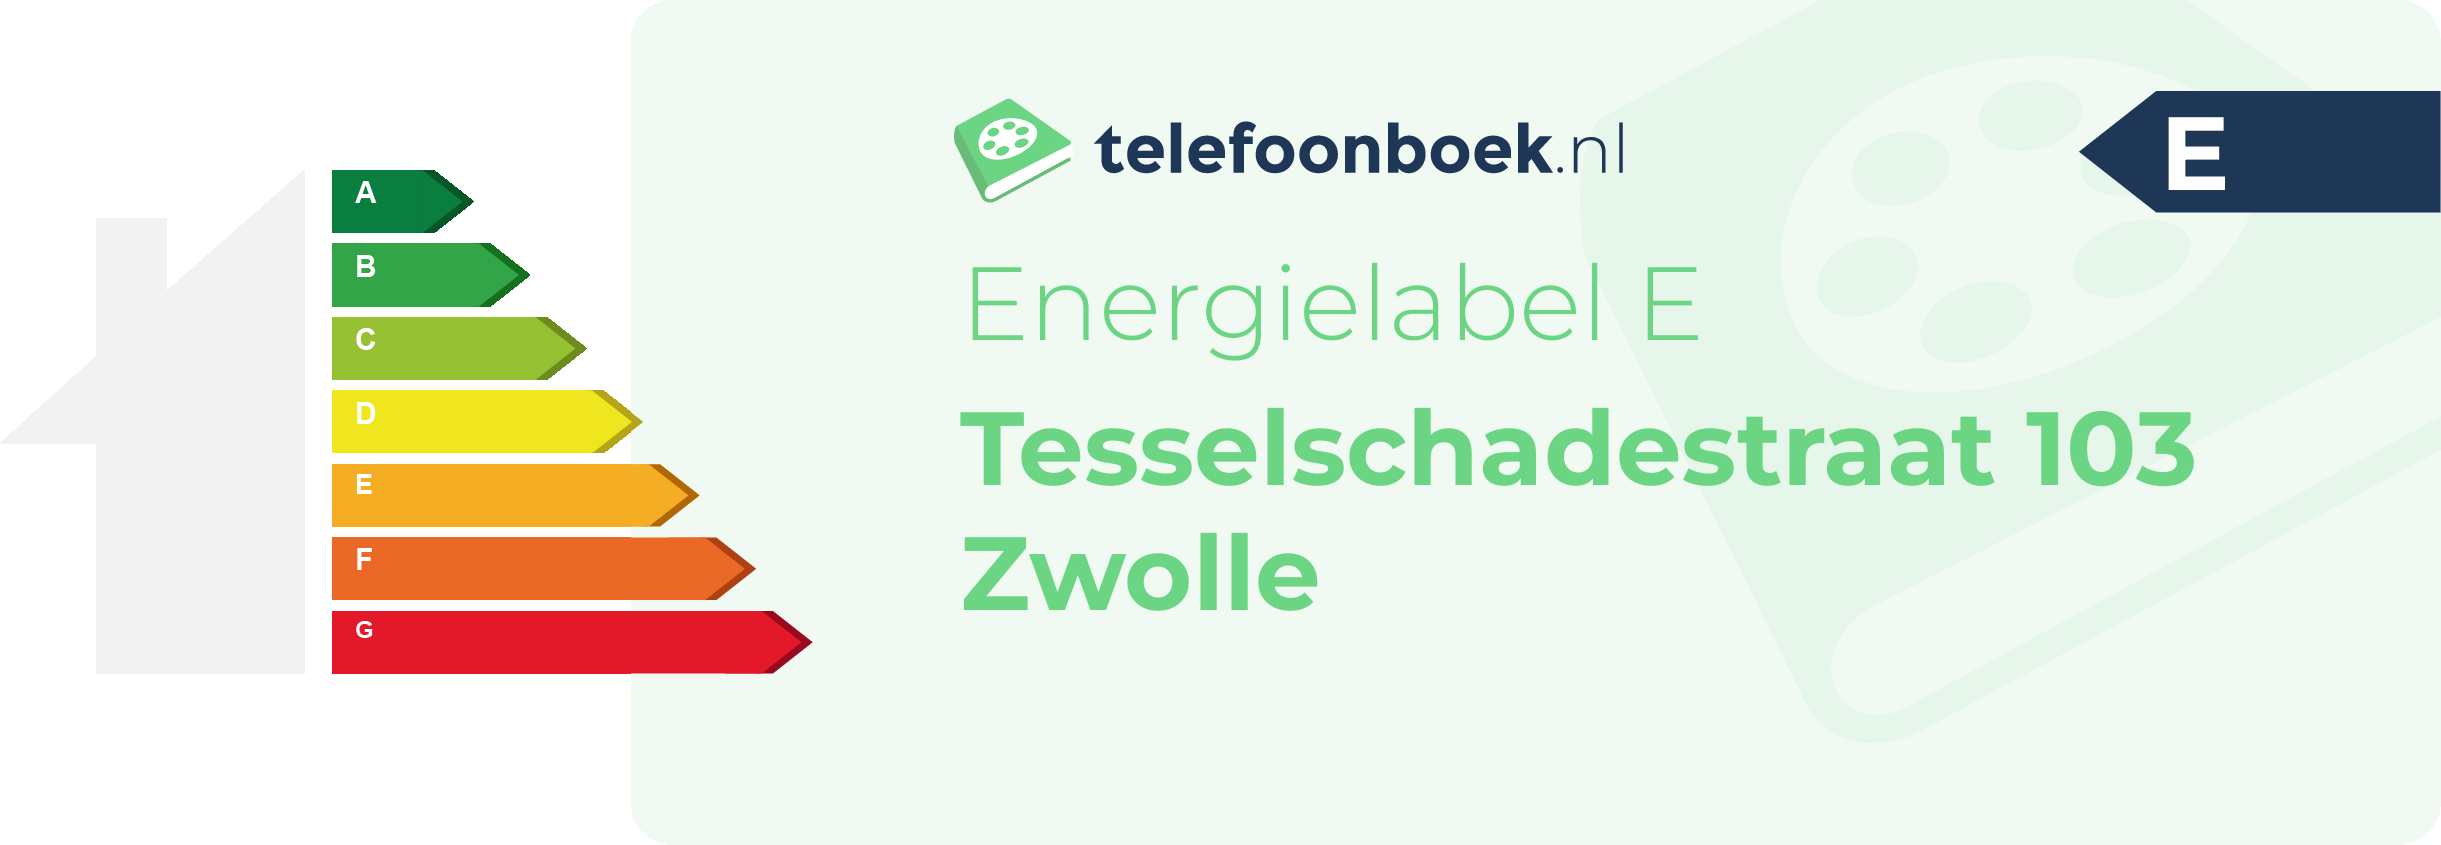 Energielabel Tesselschadestraat 103 Zwolle